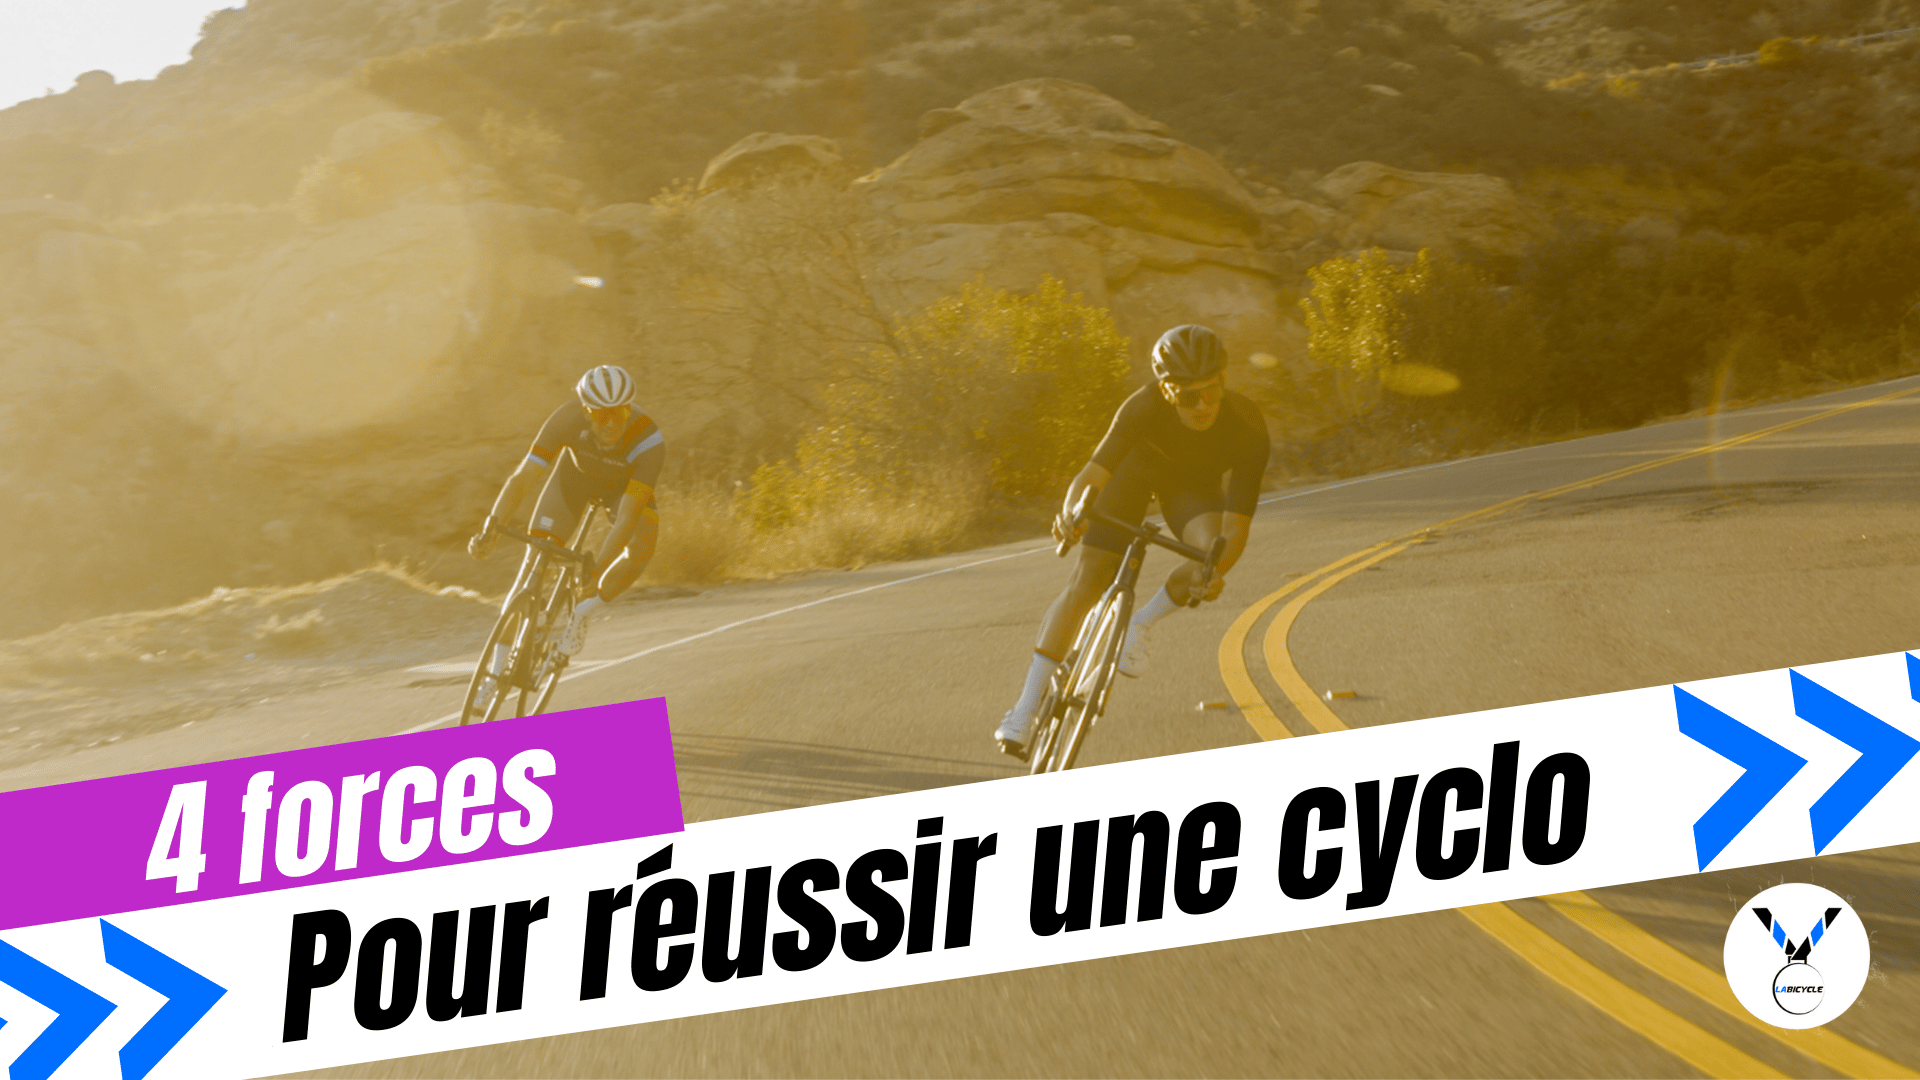 Réussir une cyclosportive : les 4 forces du coaching cycliste